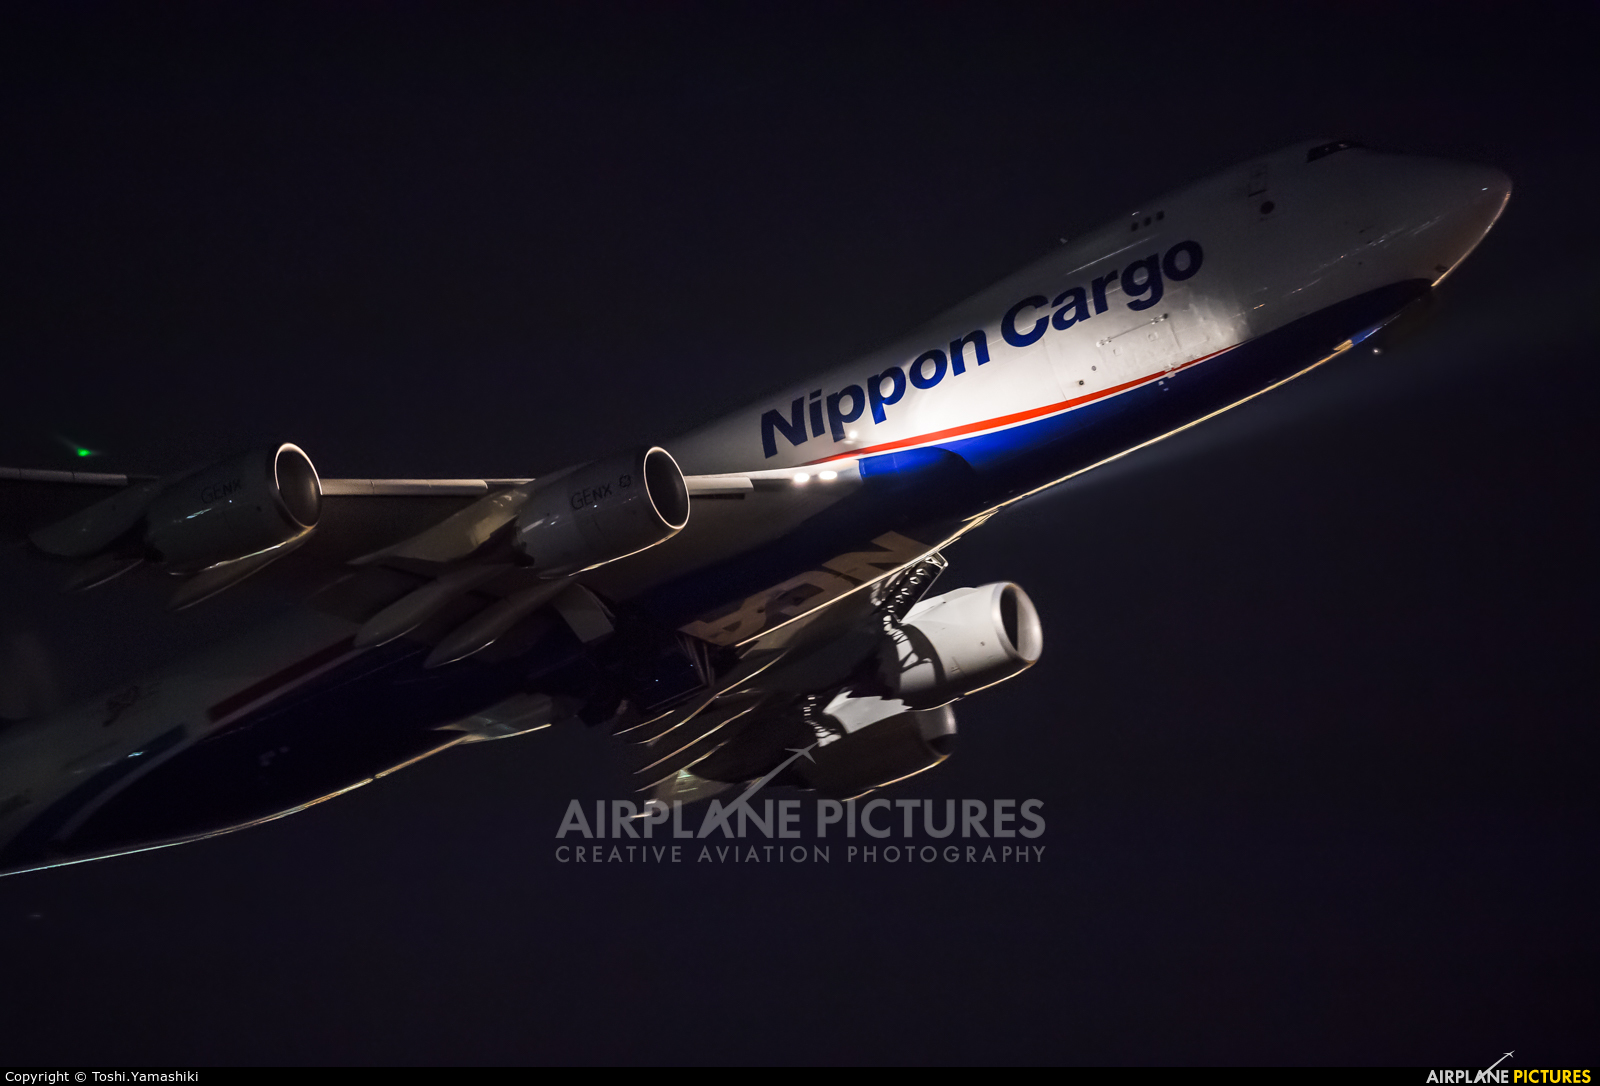 Nippon Cargo Airlines JA11KZ aircraft at Tokyo - Narita Intl